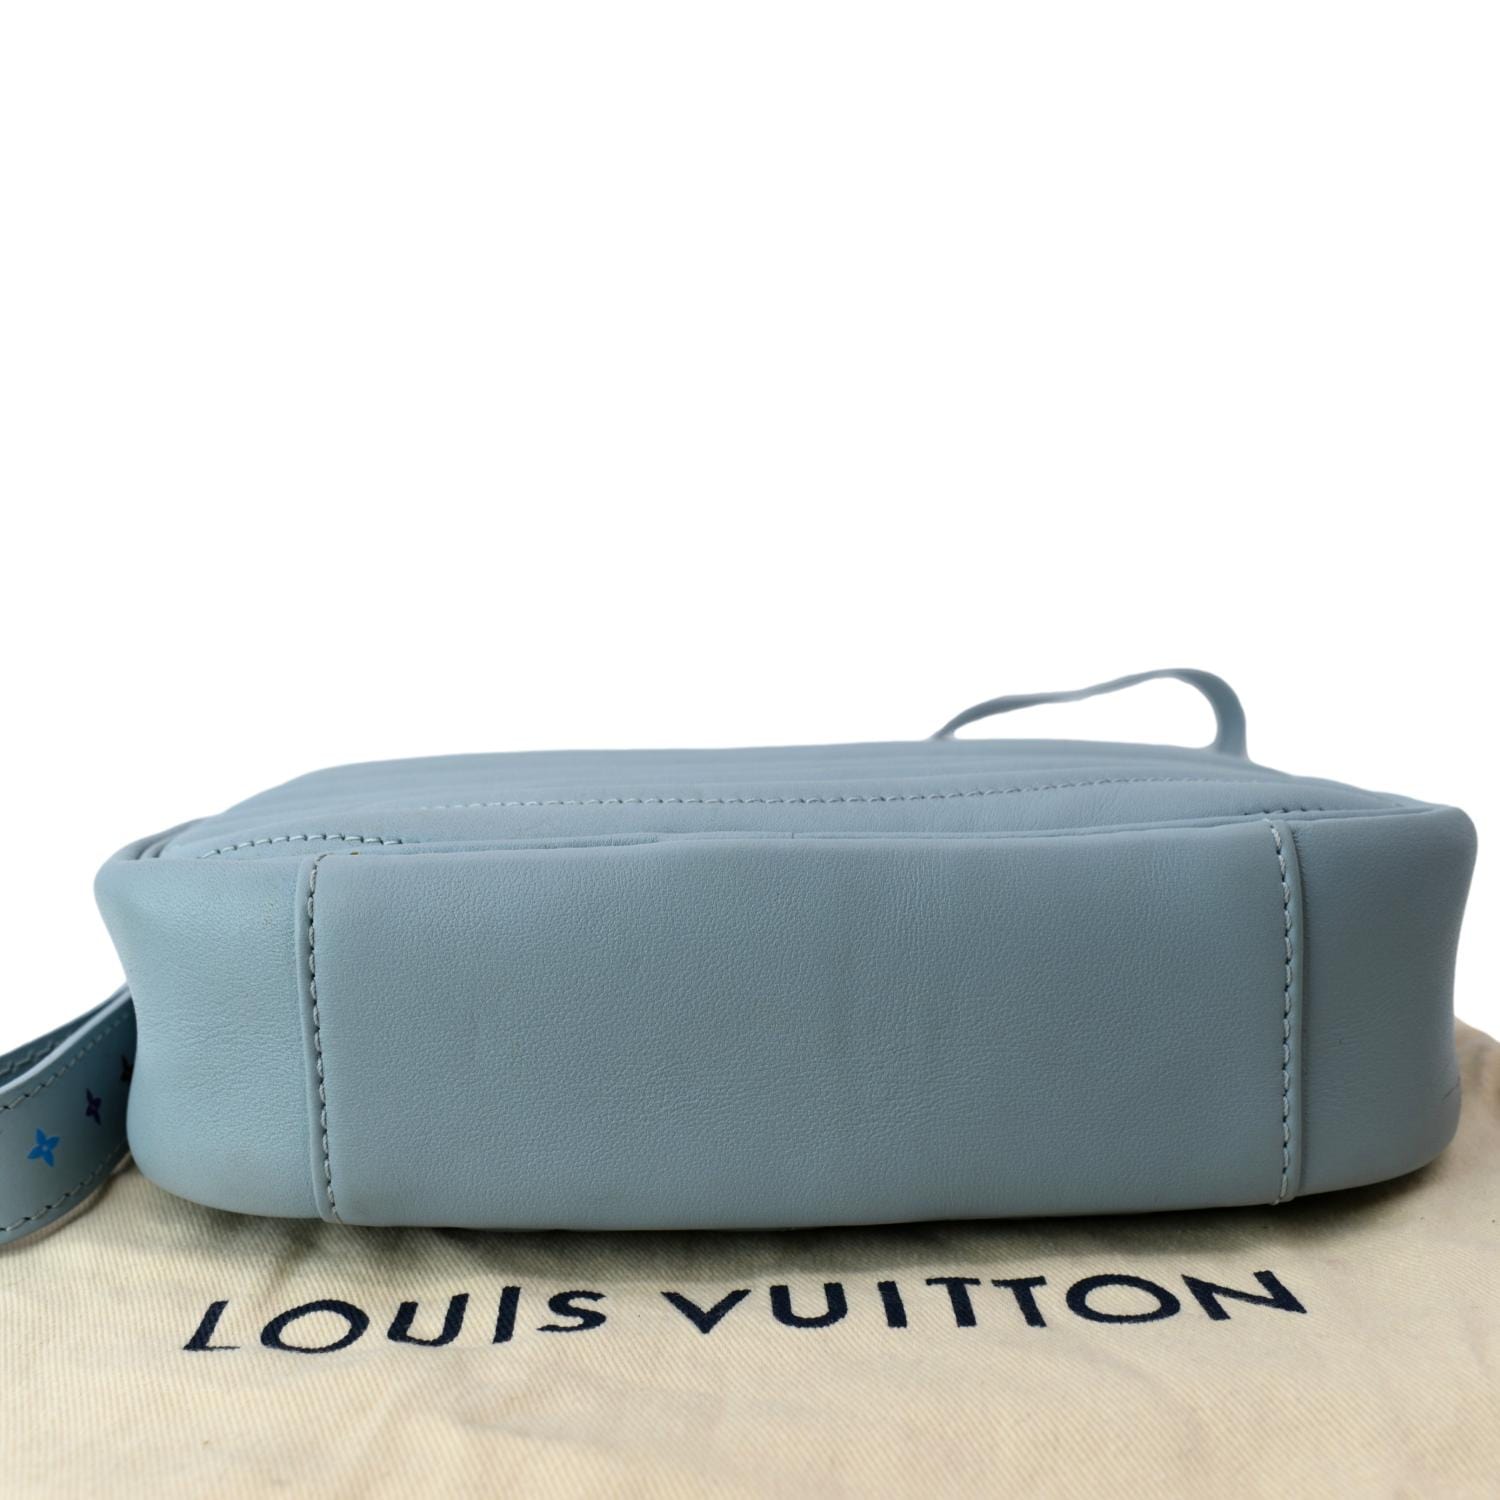 LOUIS VUITTON Epi New Wave Camera Bag Shoulder Bag LV Light Blue